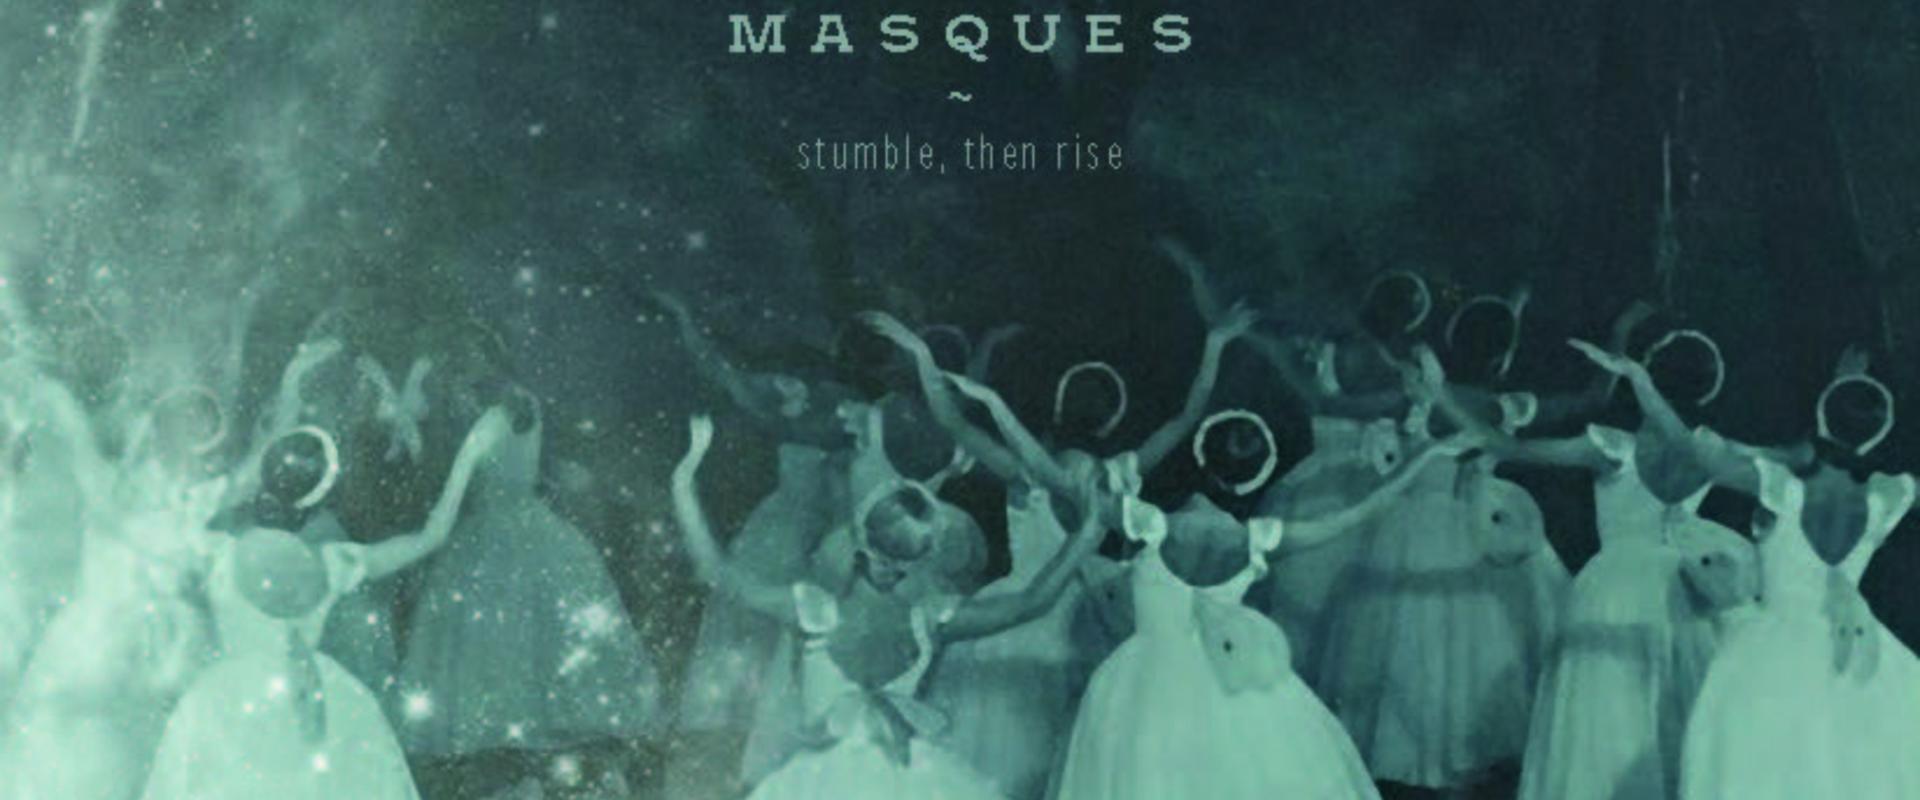 CD Neuerscheinung: Masques - Stumble, then rise